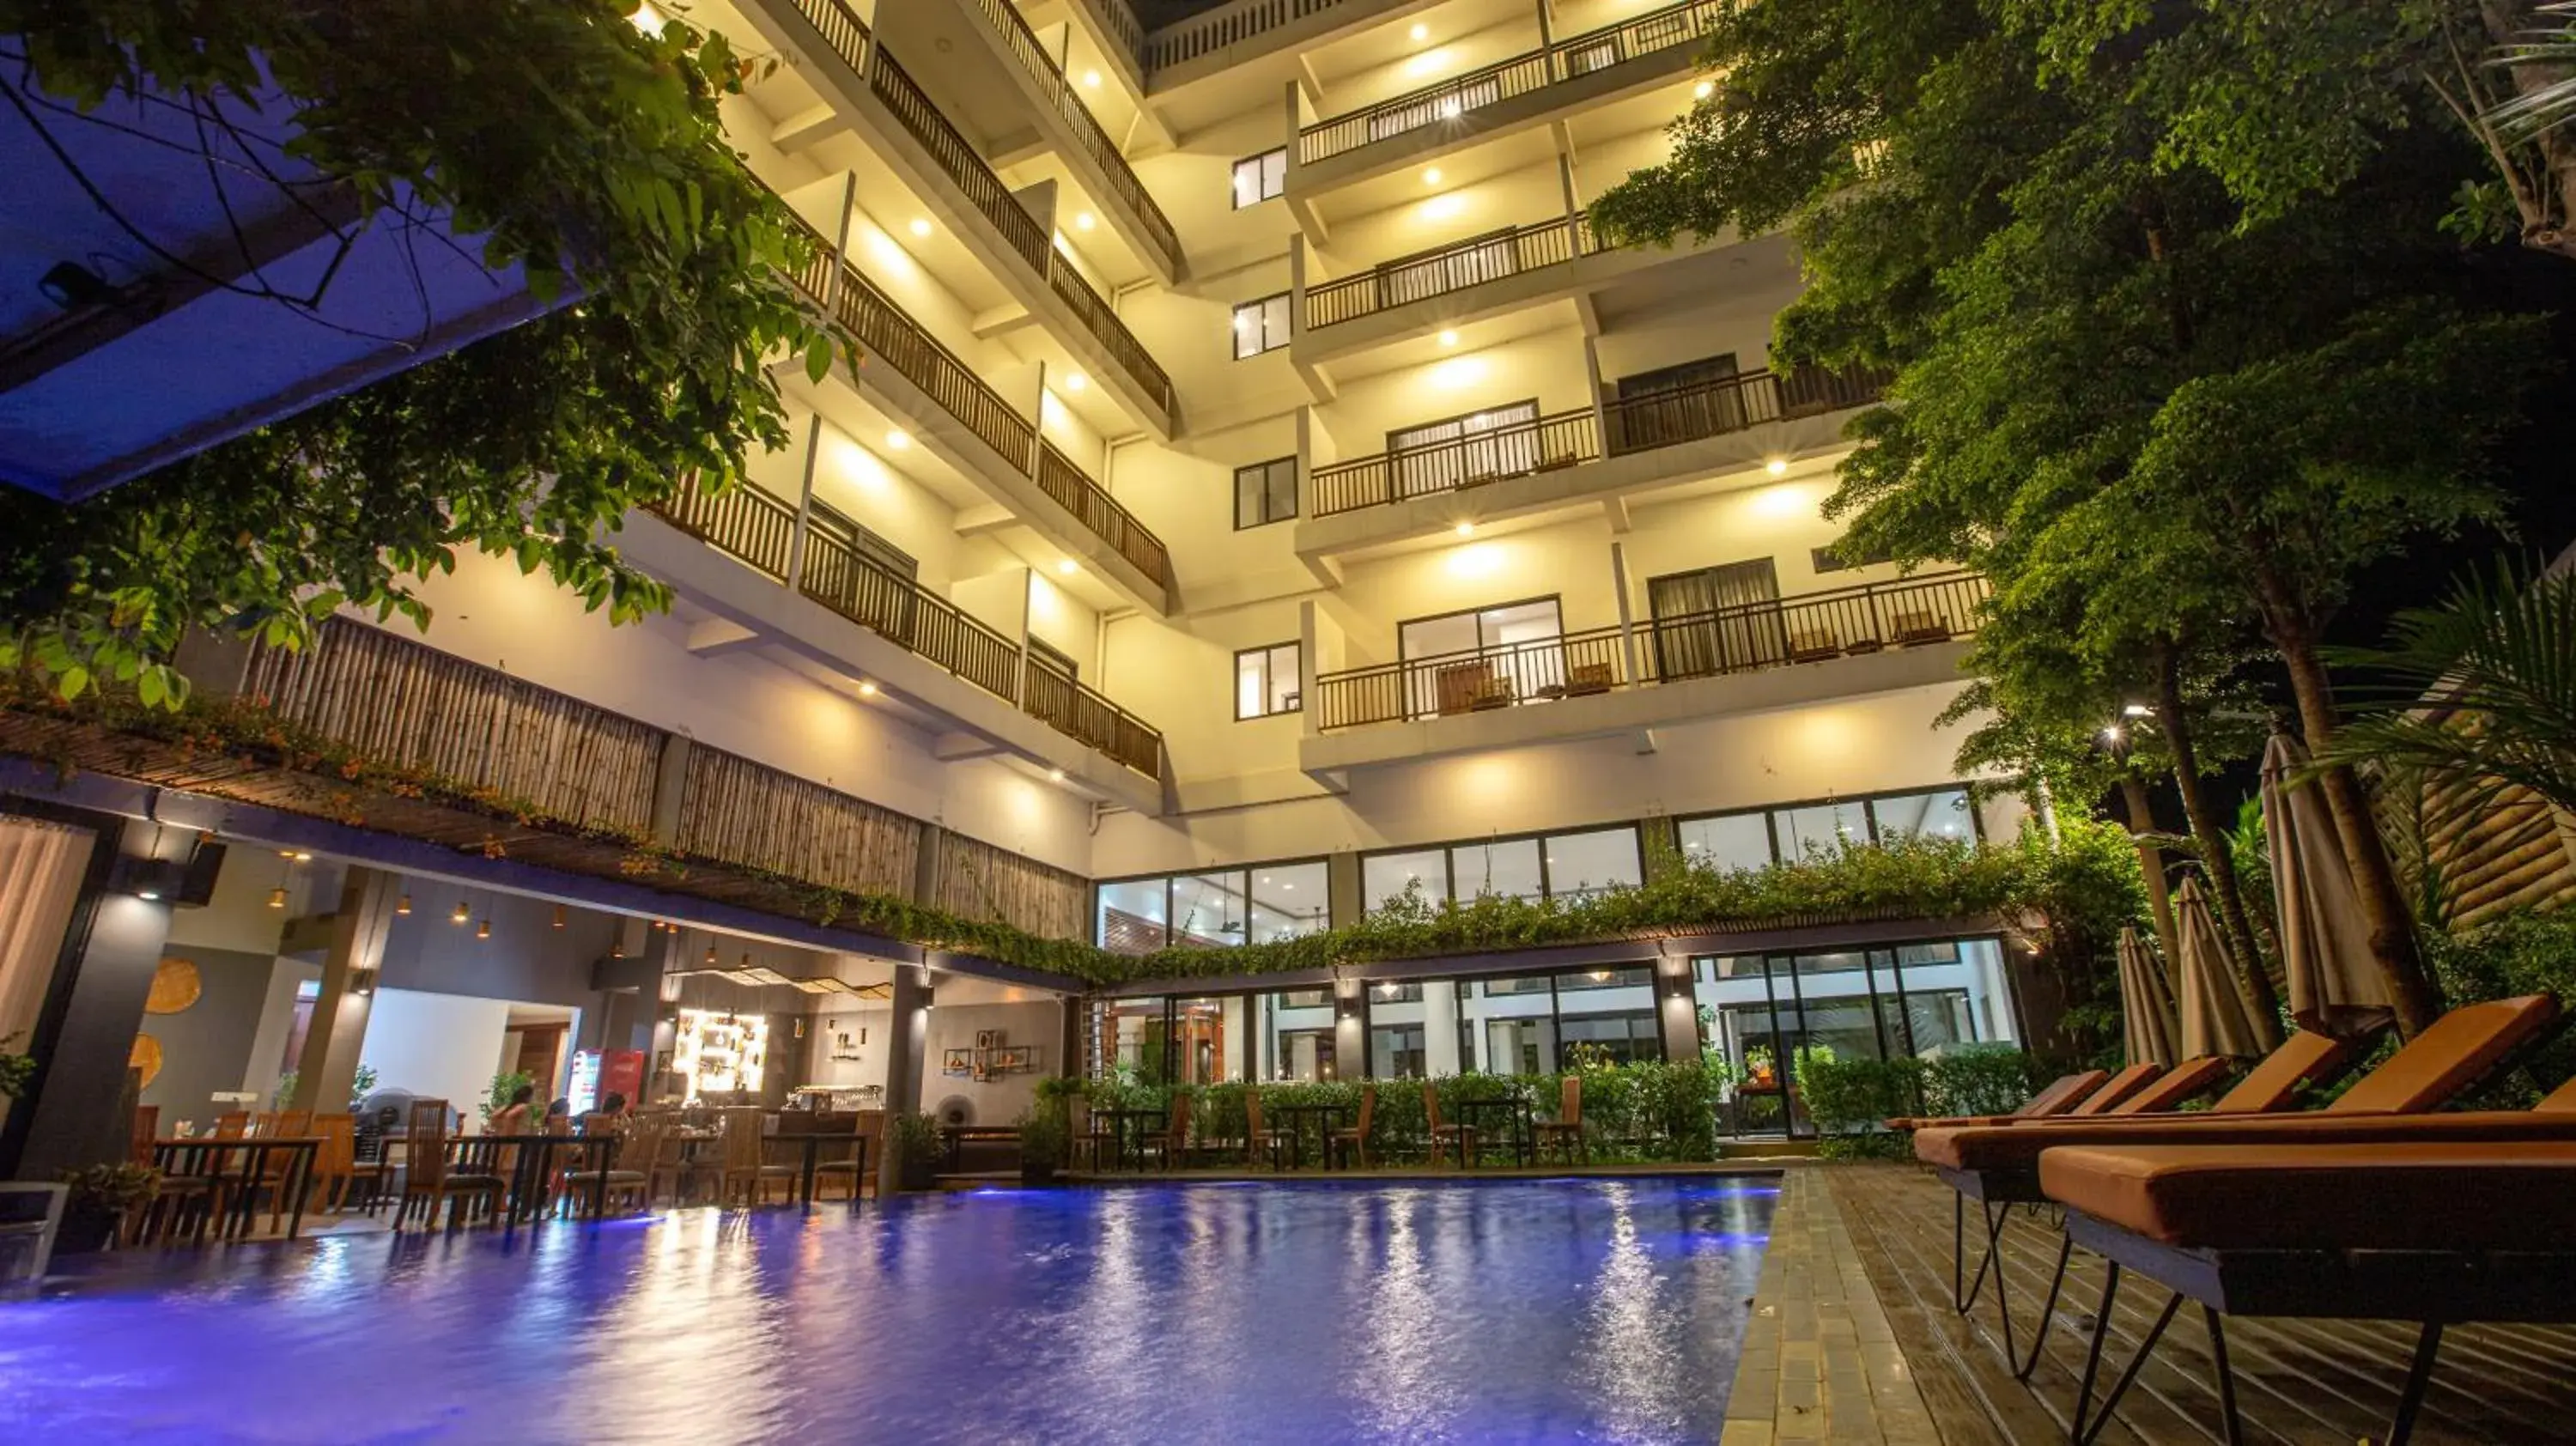 Night, Swimming Pool in DACO Hotel